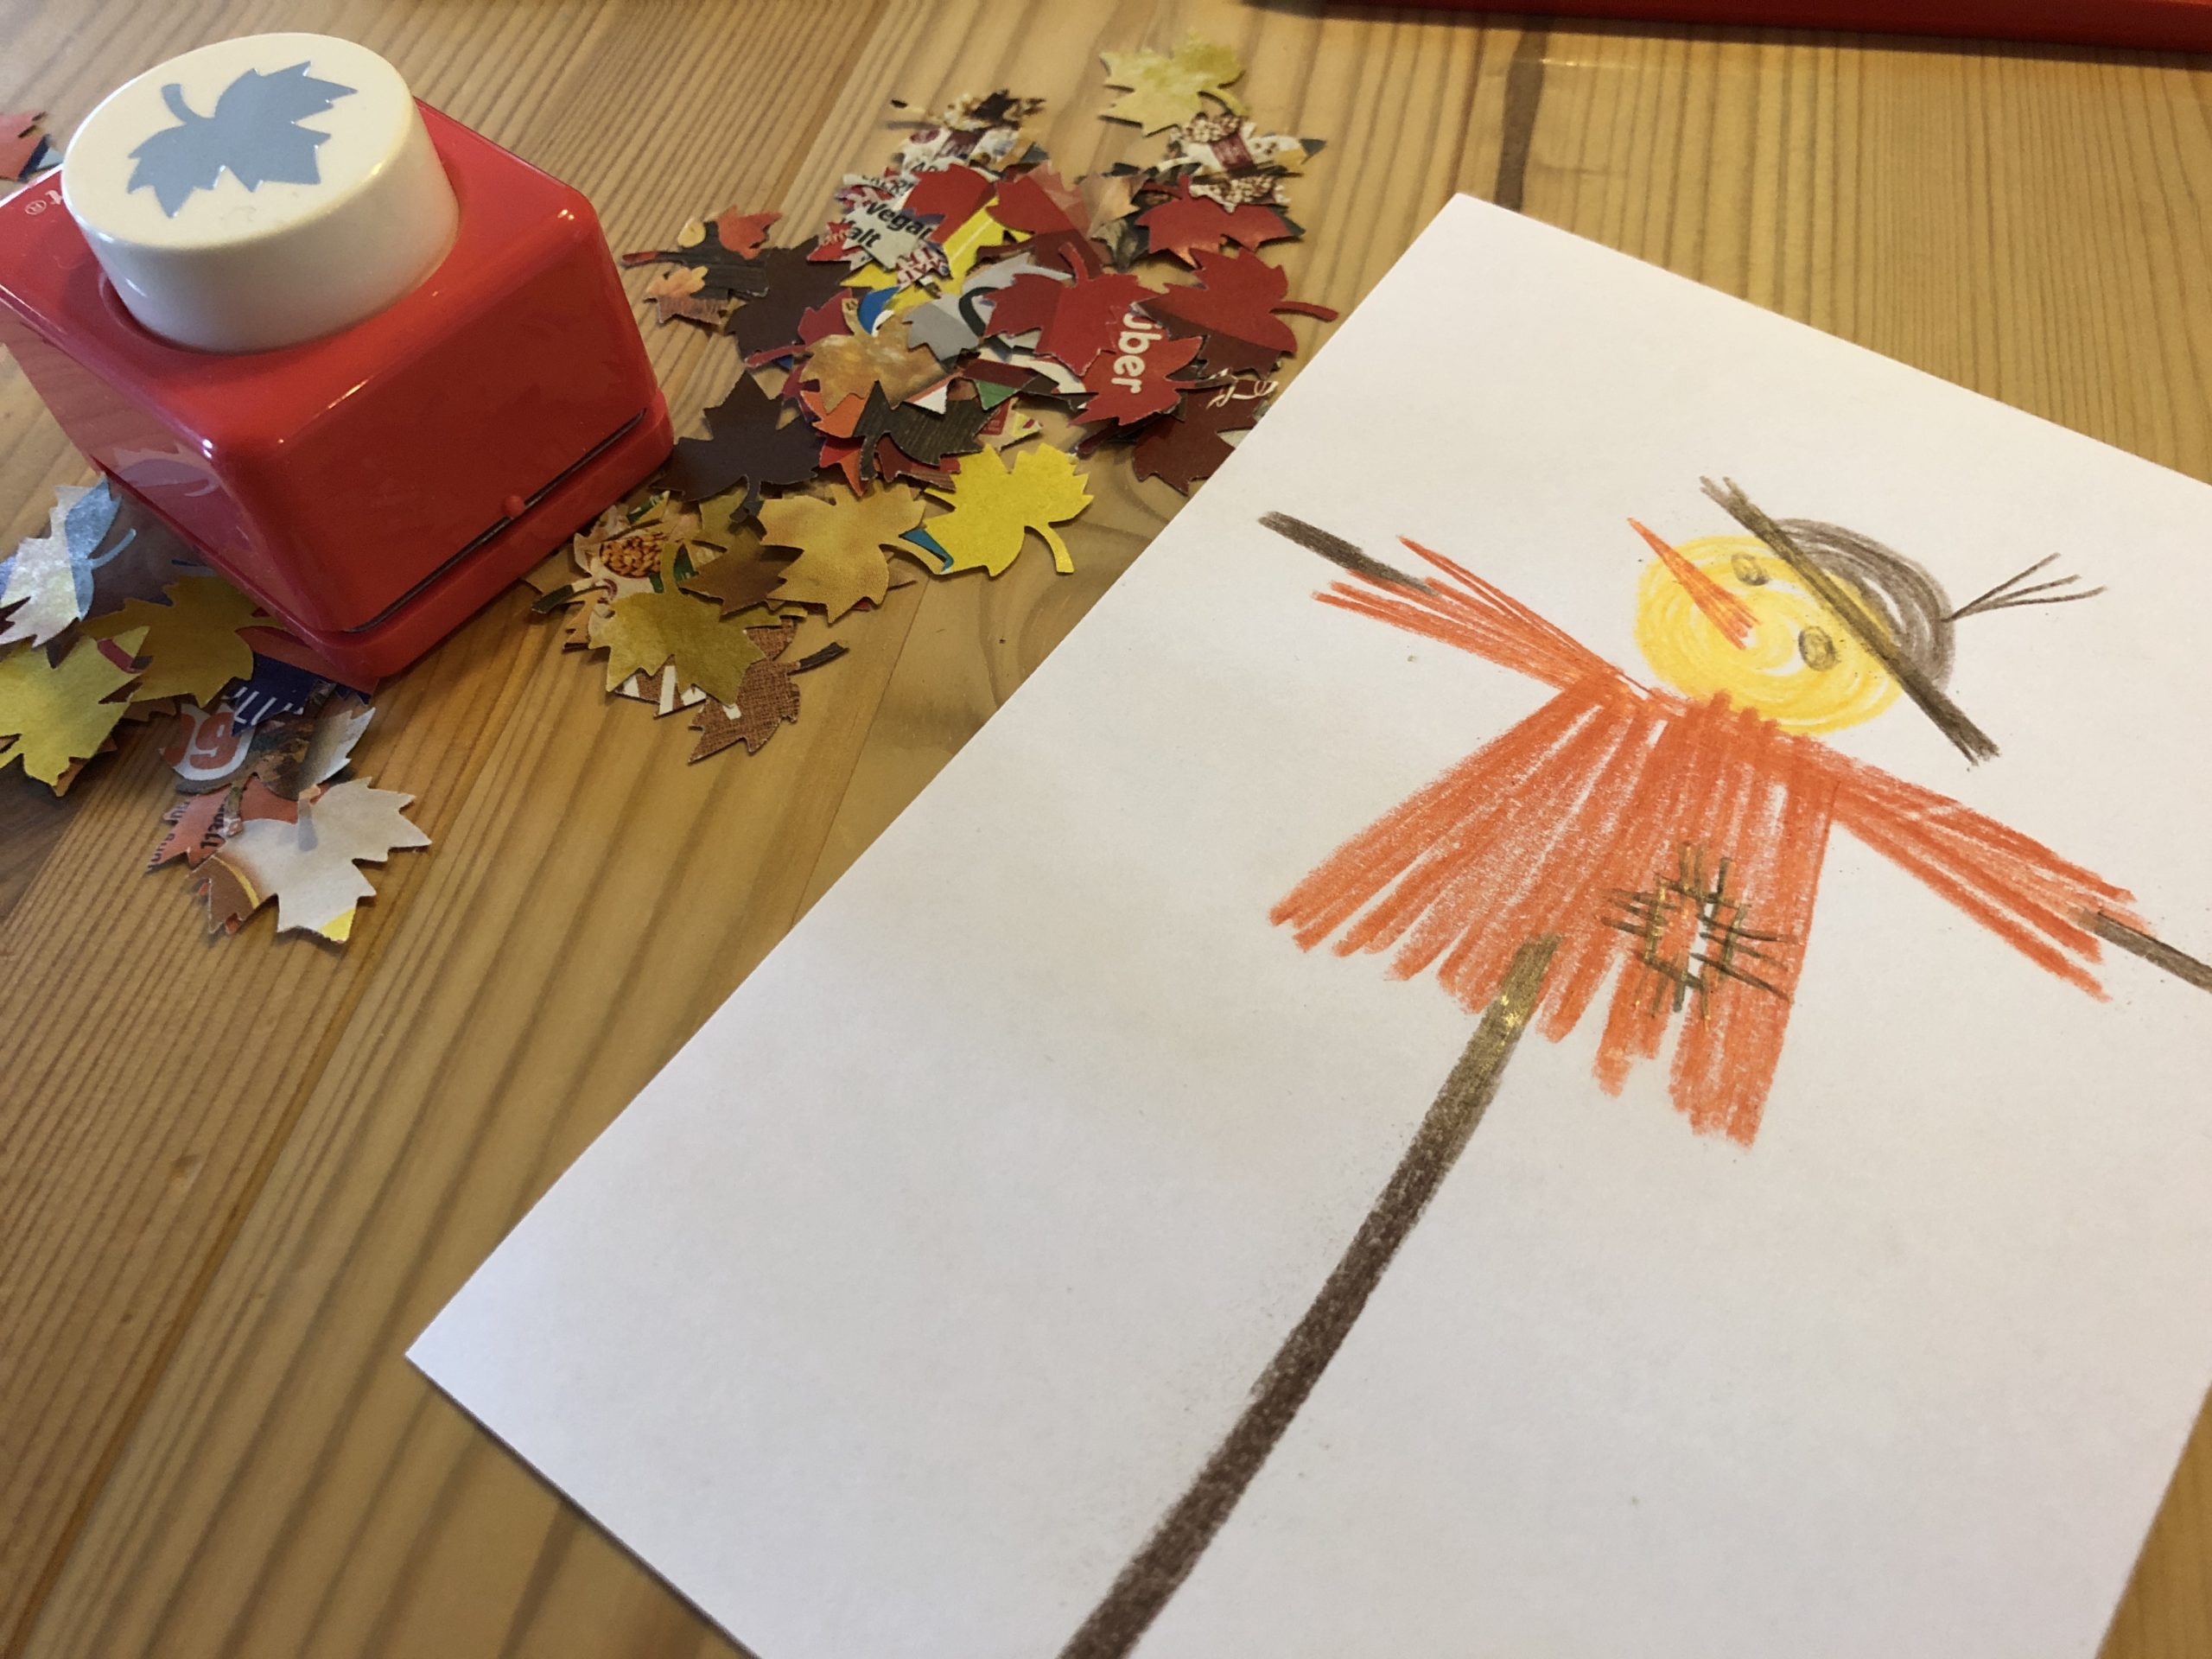 Bild zum Schritt 4 für das Bastel- und DIY-Abenteuer für Kinder: 'Wenn ihr eine Vogelscheuche gemalt habt, legt sie in einen...'